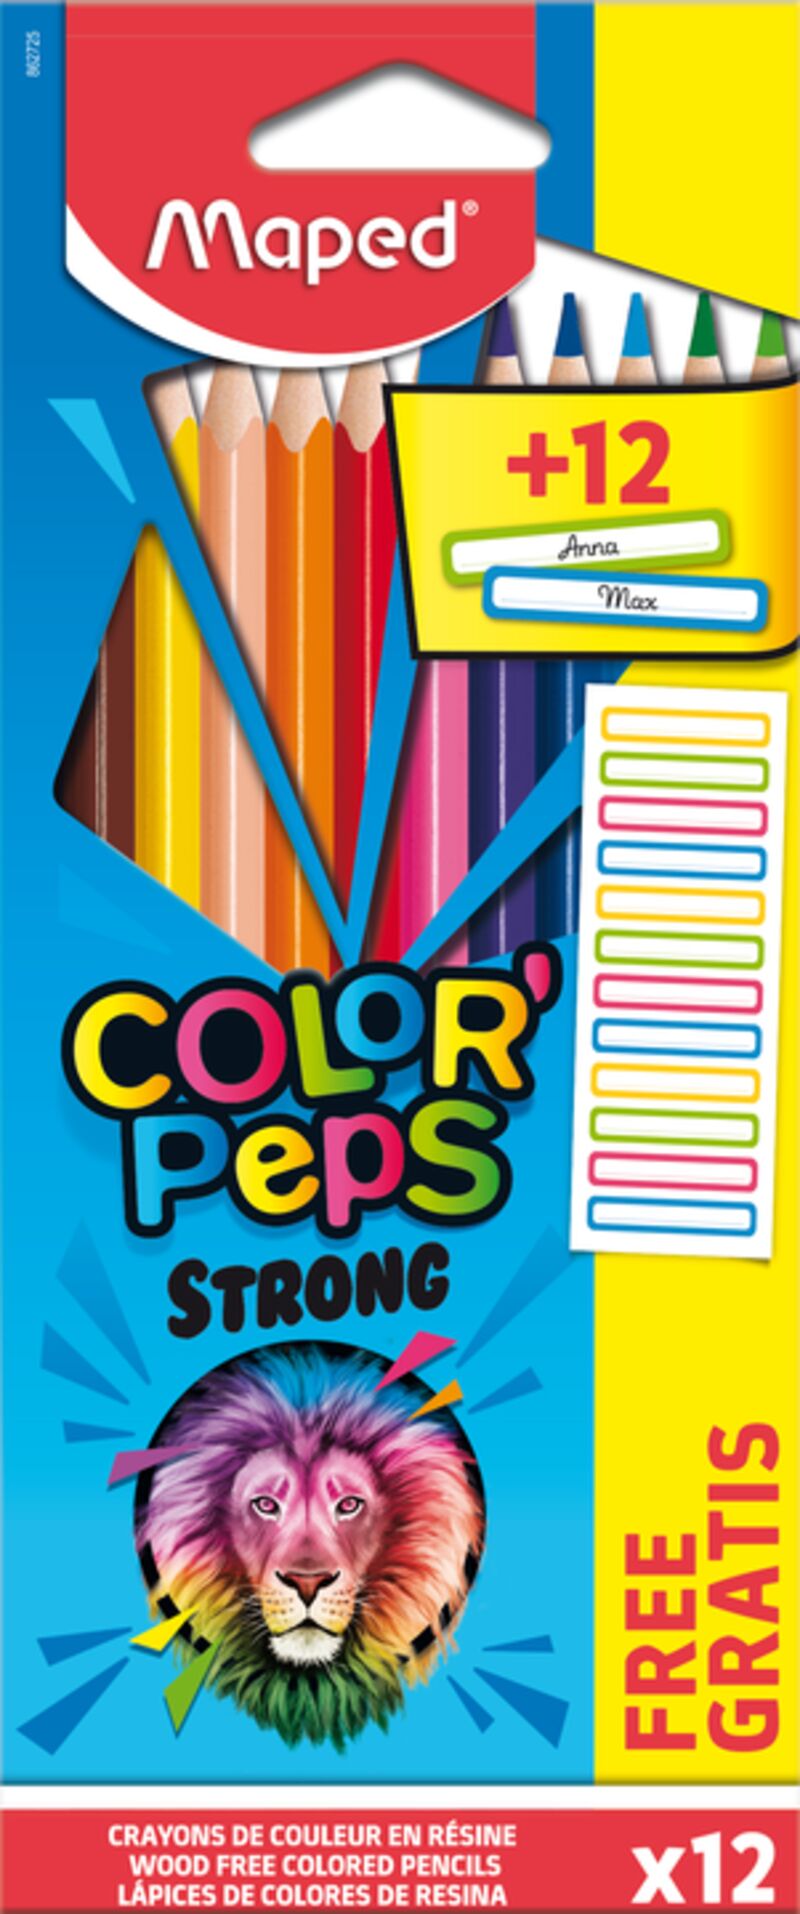 c / 12 lapices colores color peps strong + 12 etiquetas